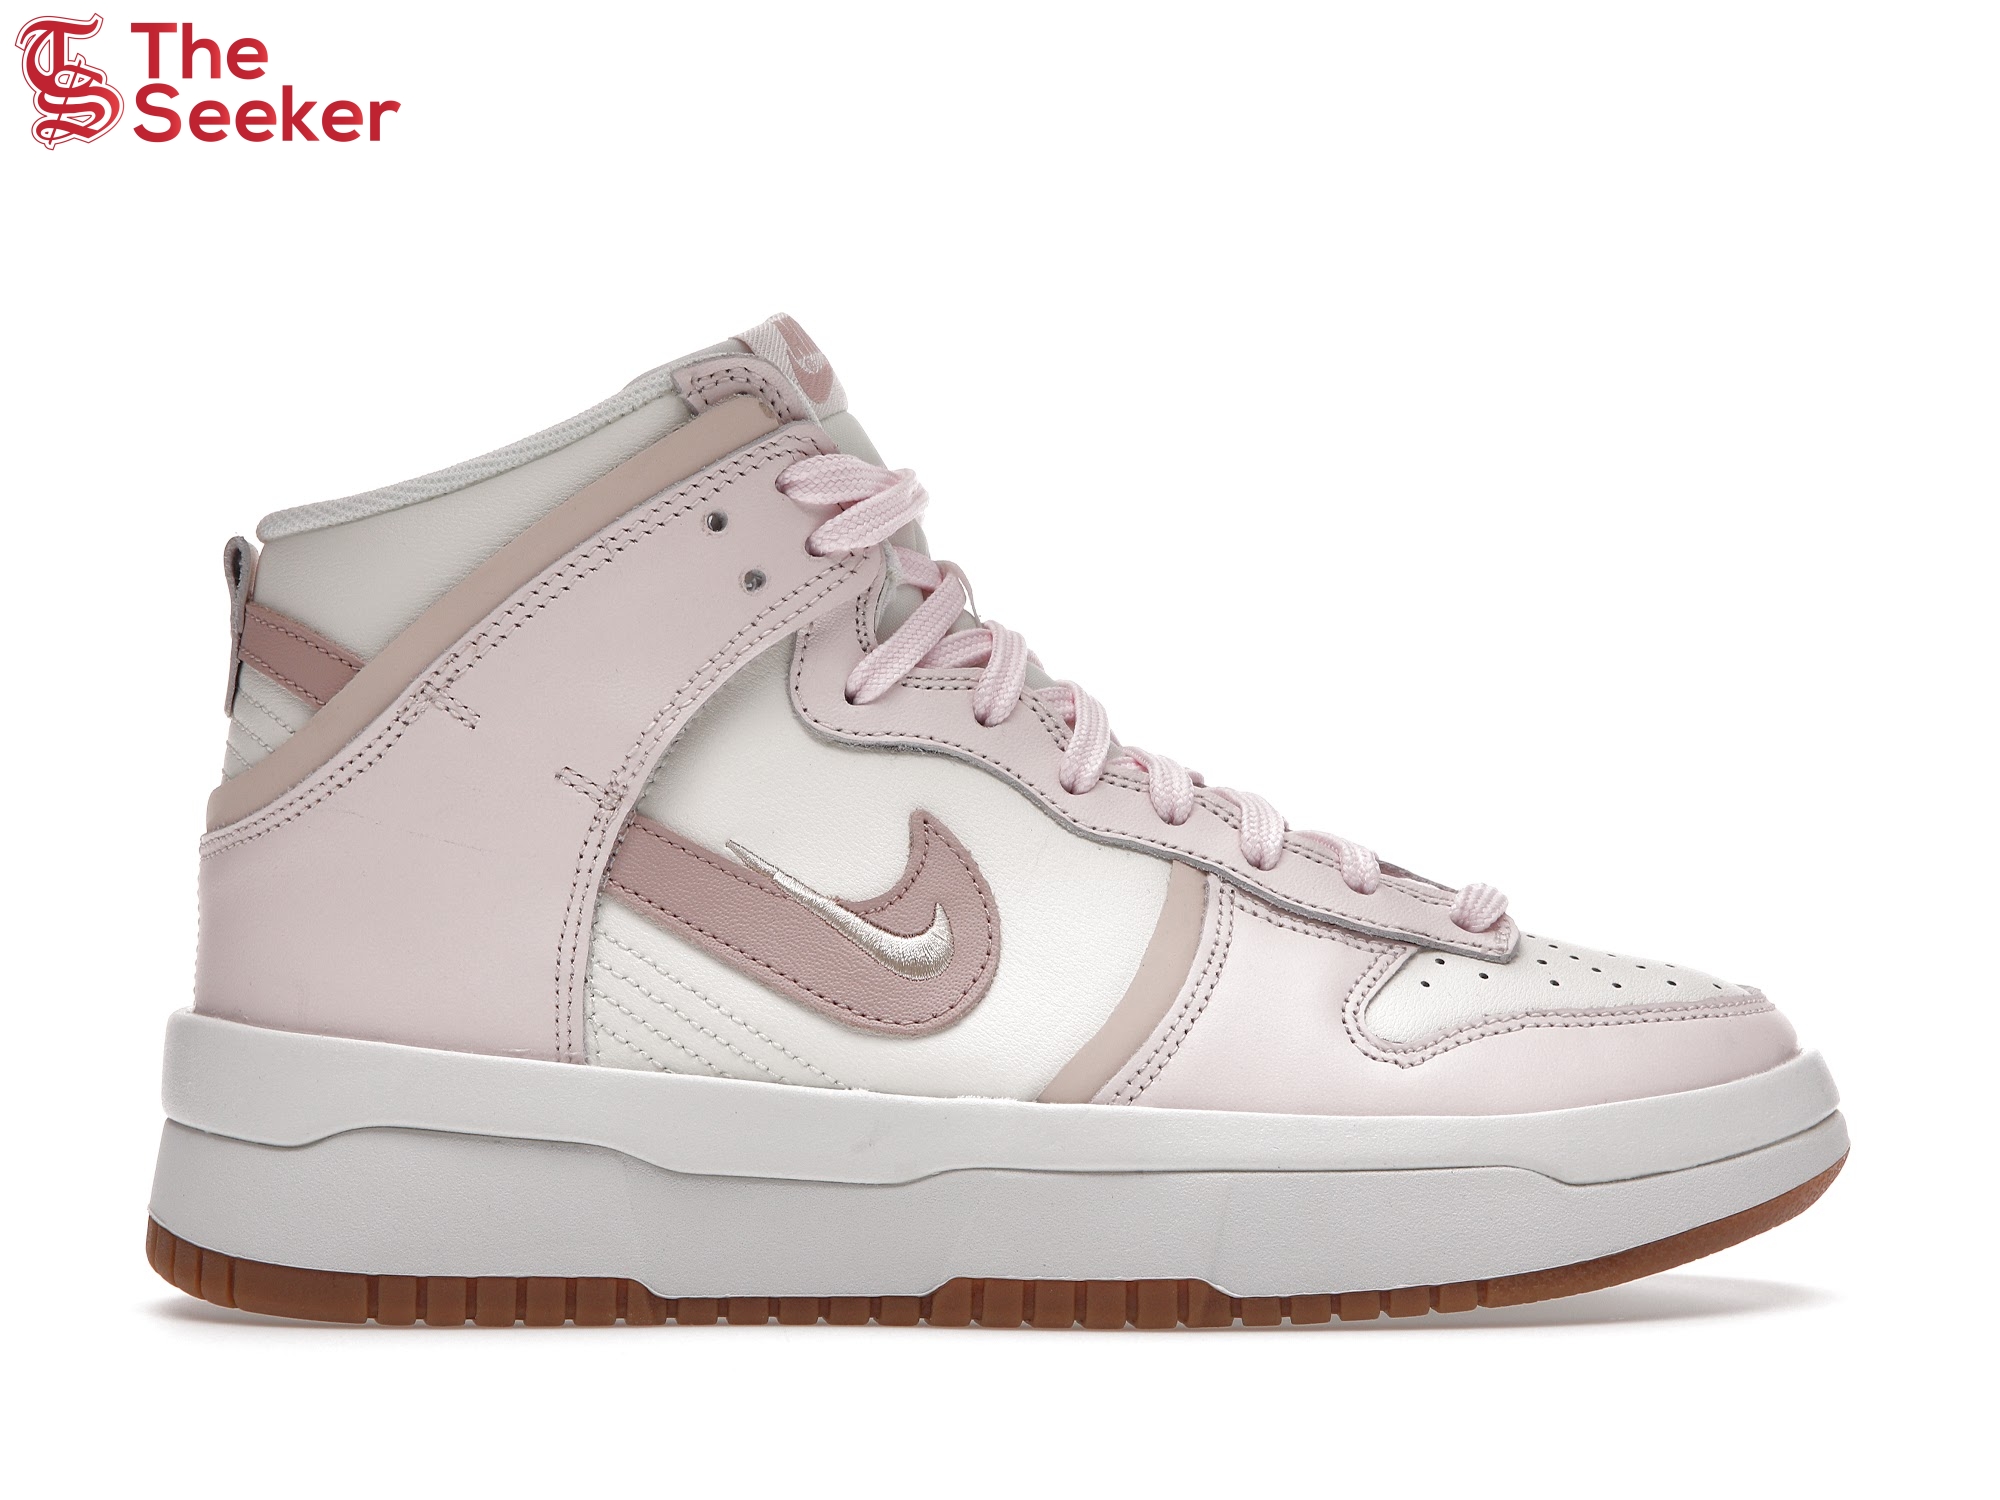 Nike Dunk High Up Sail Light Soft Pink (Women's)